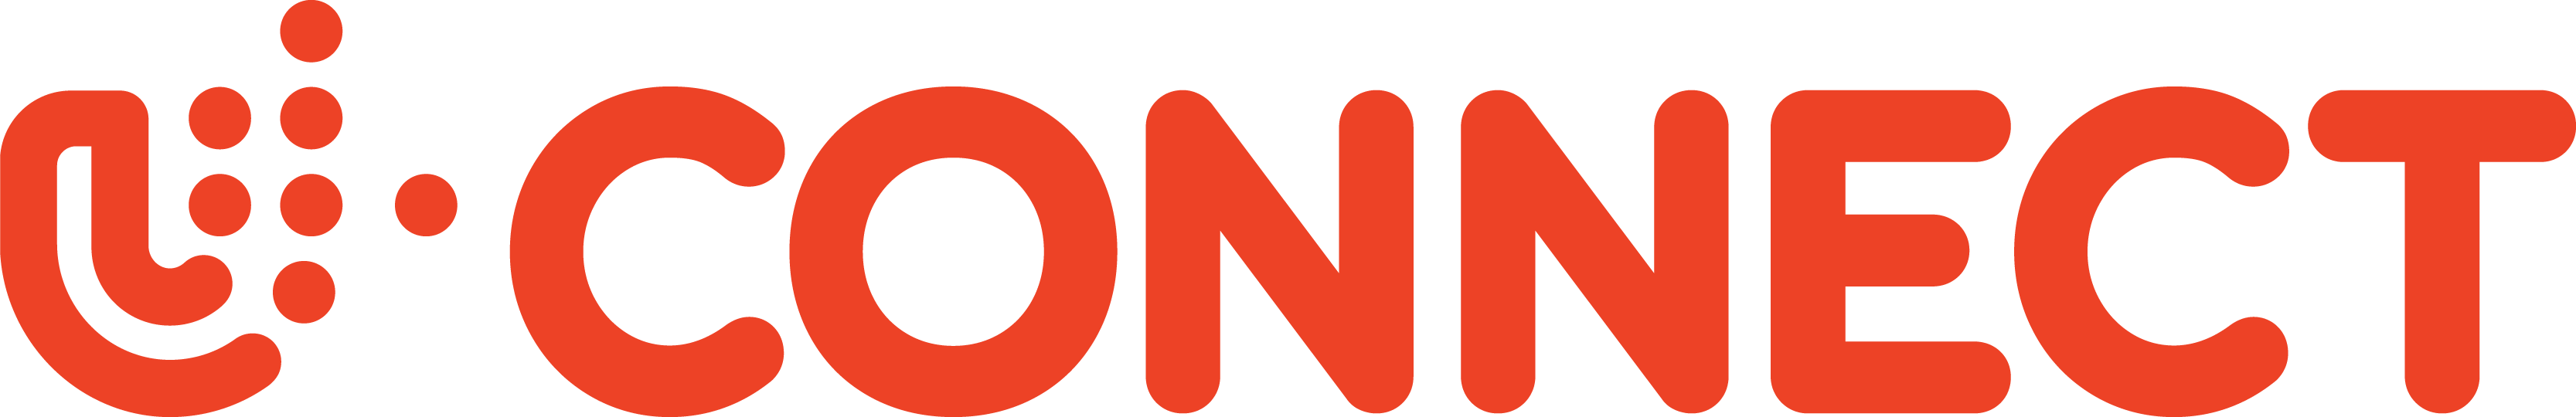 мини U-Connect_logo2.png